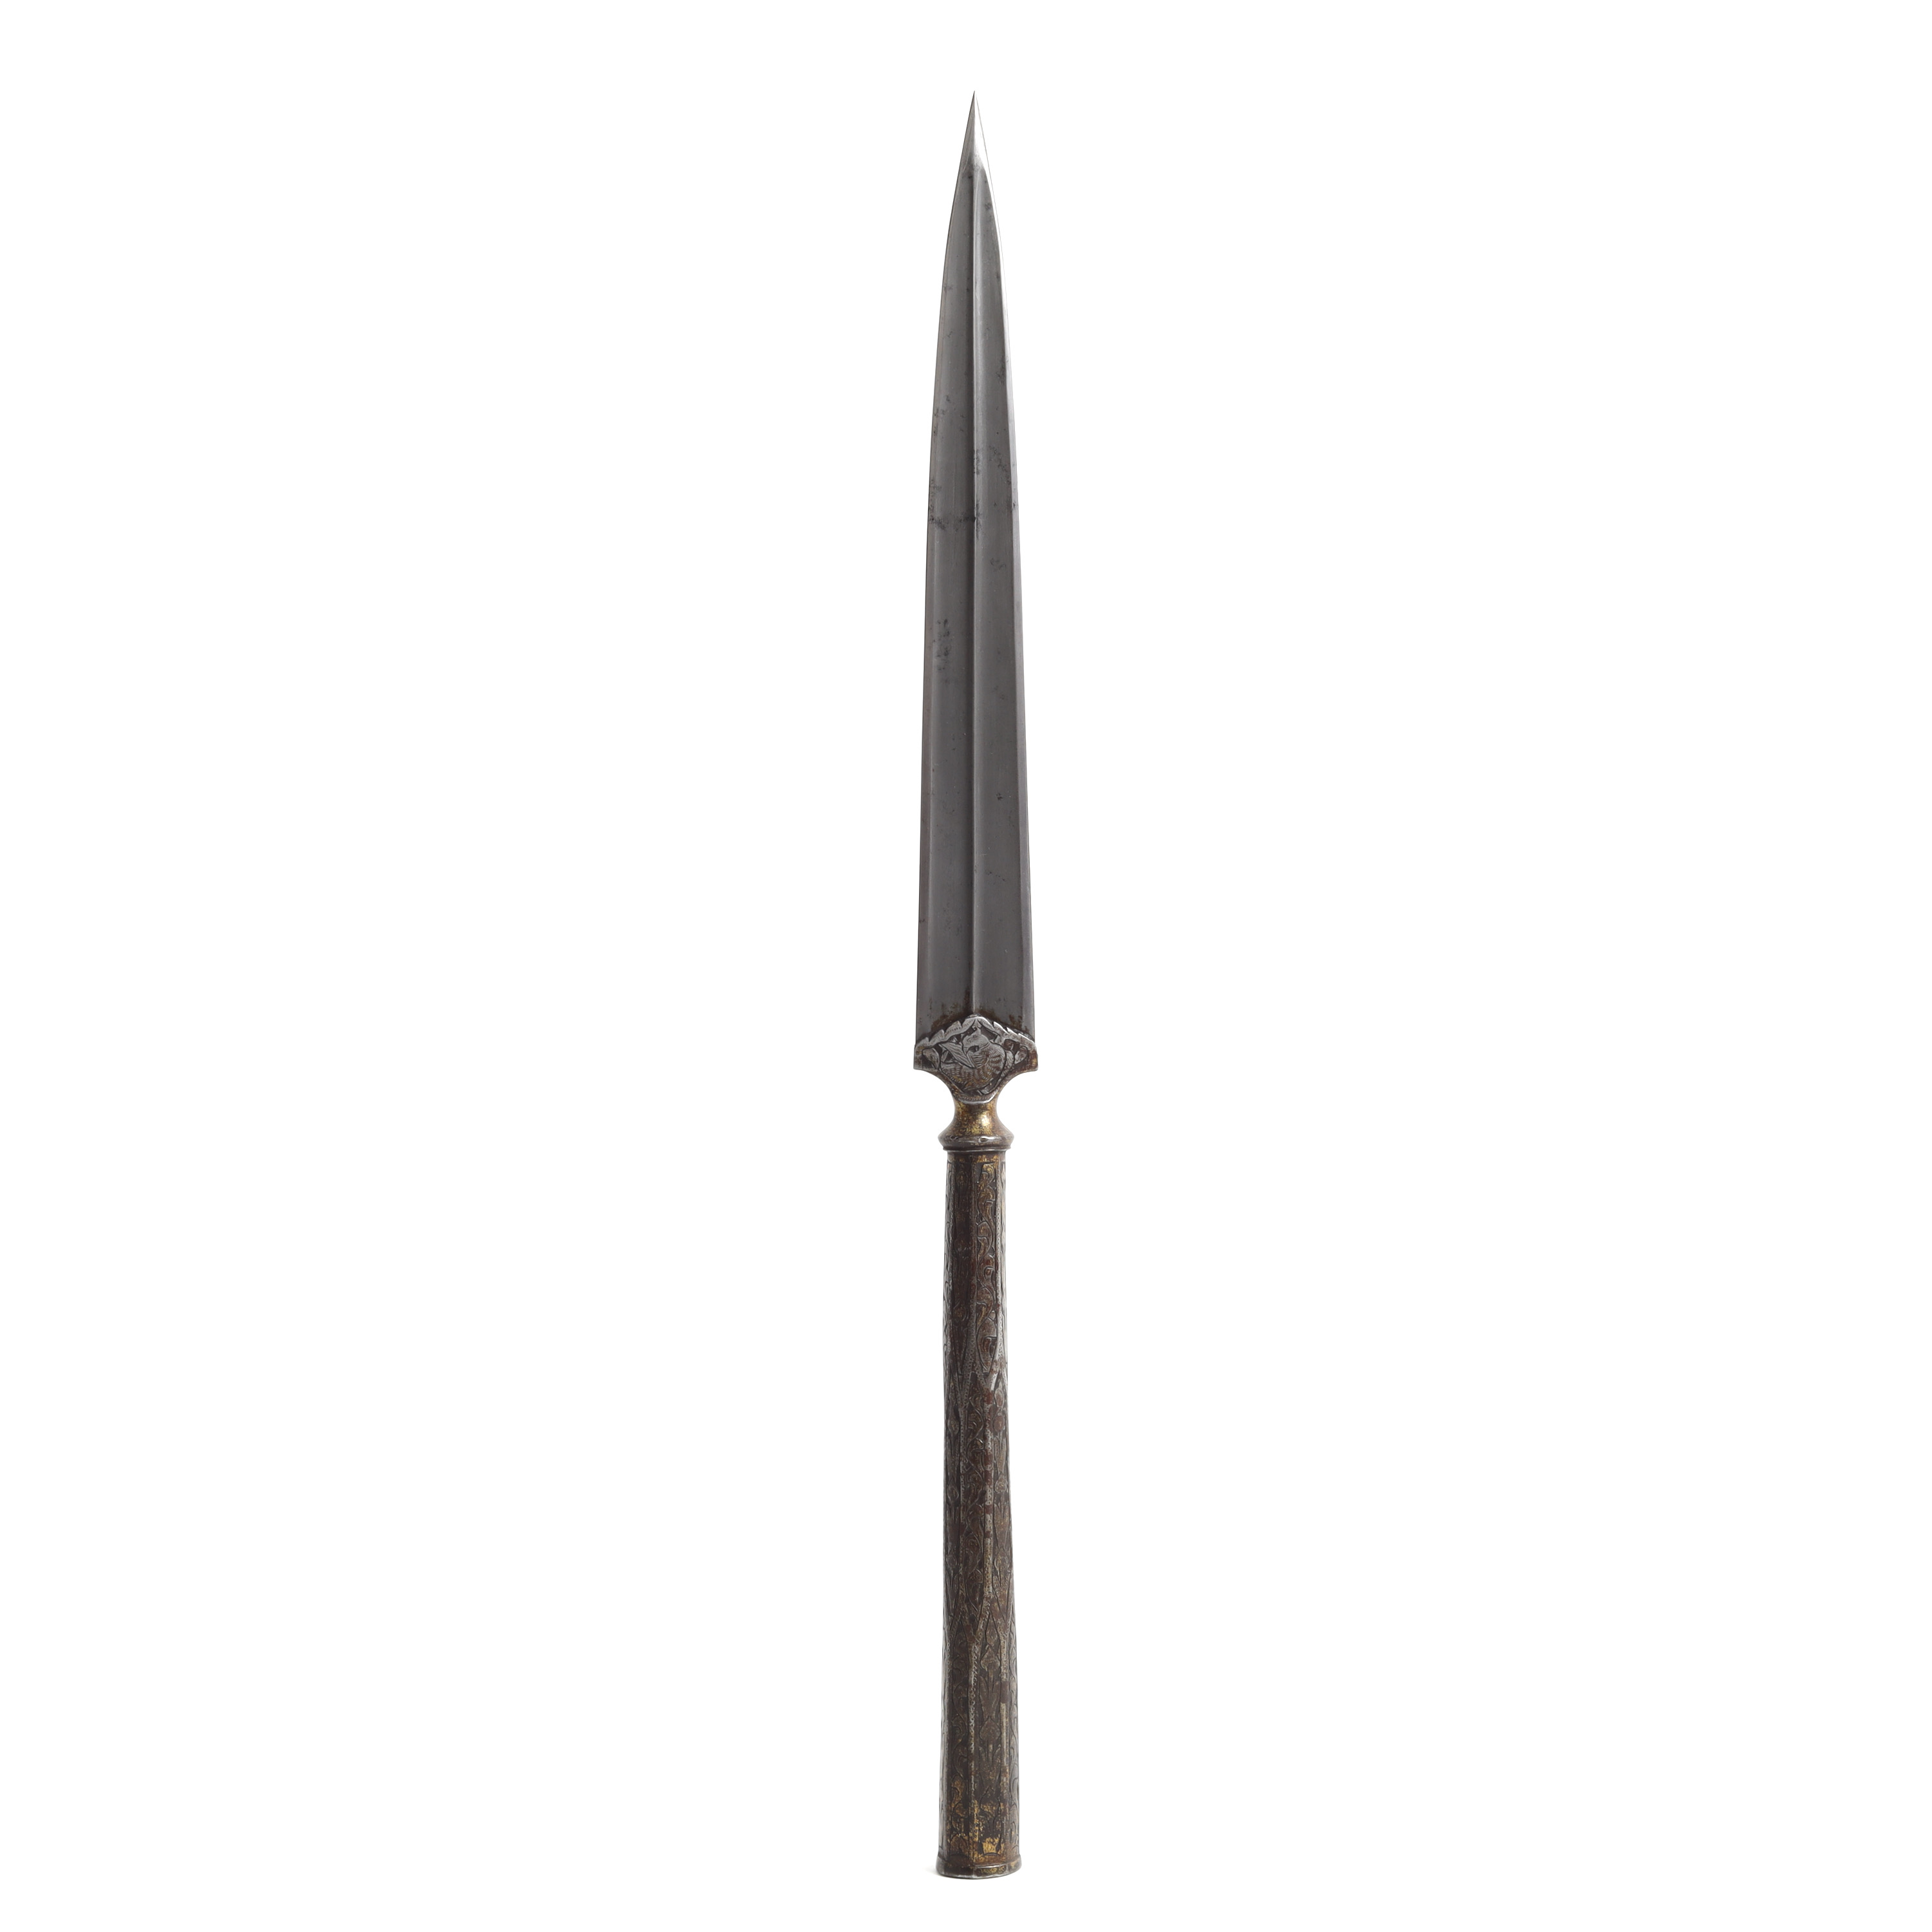 Persian spearhead